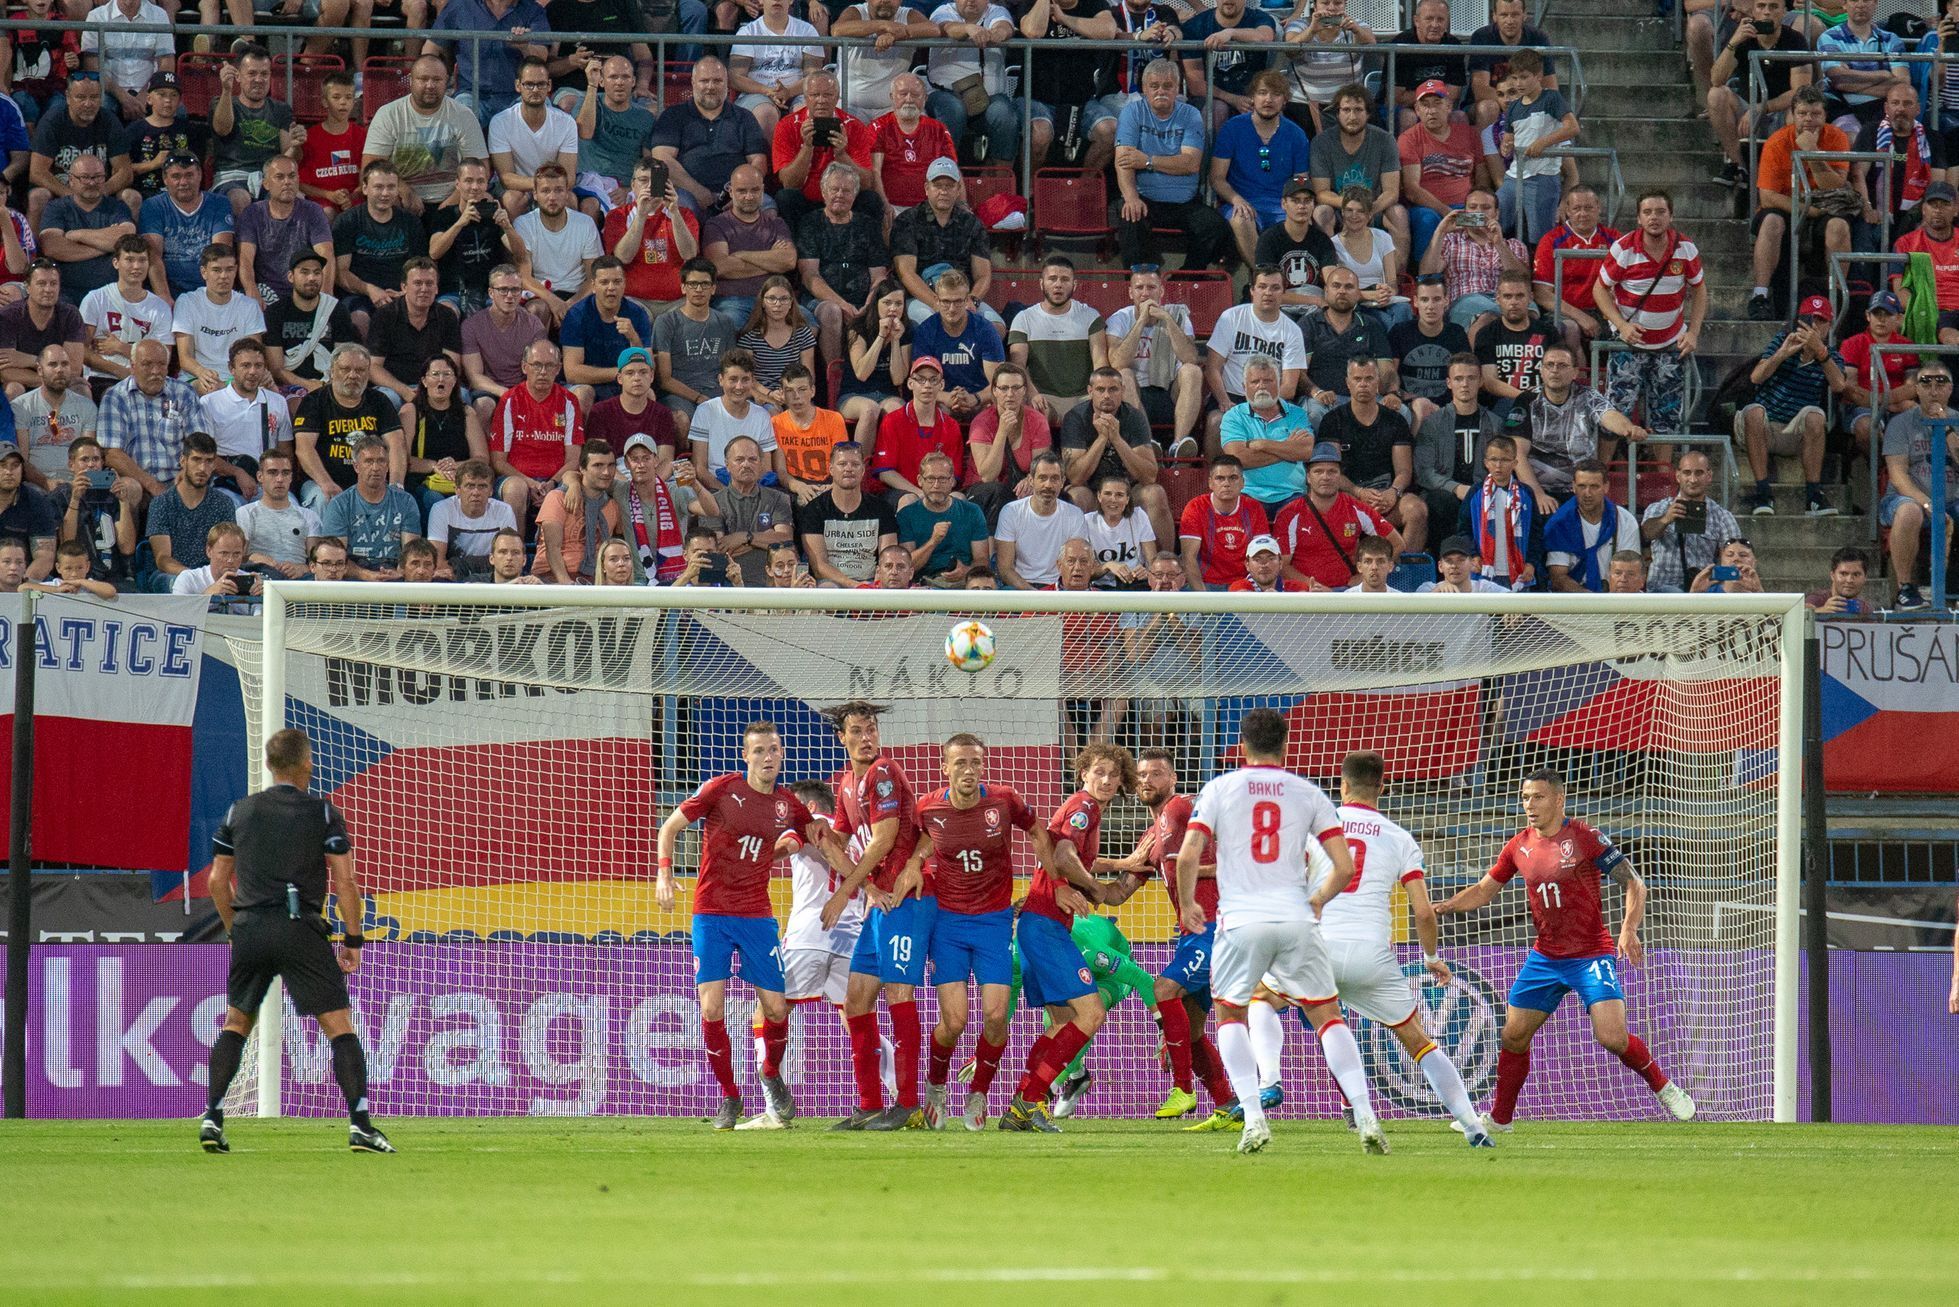 Momentka z kvalifikace ME 2020 Česko - Černá Hora.